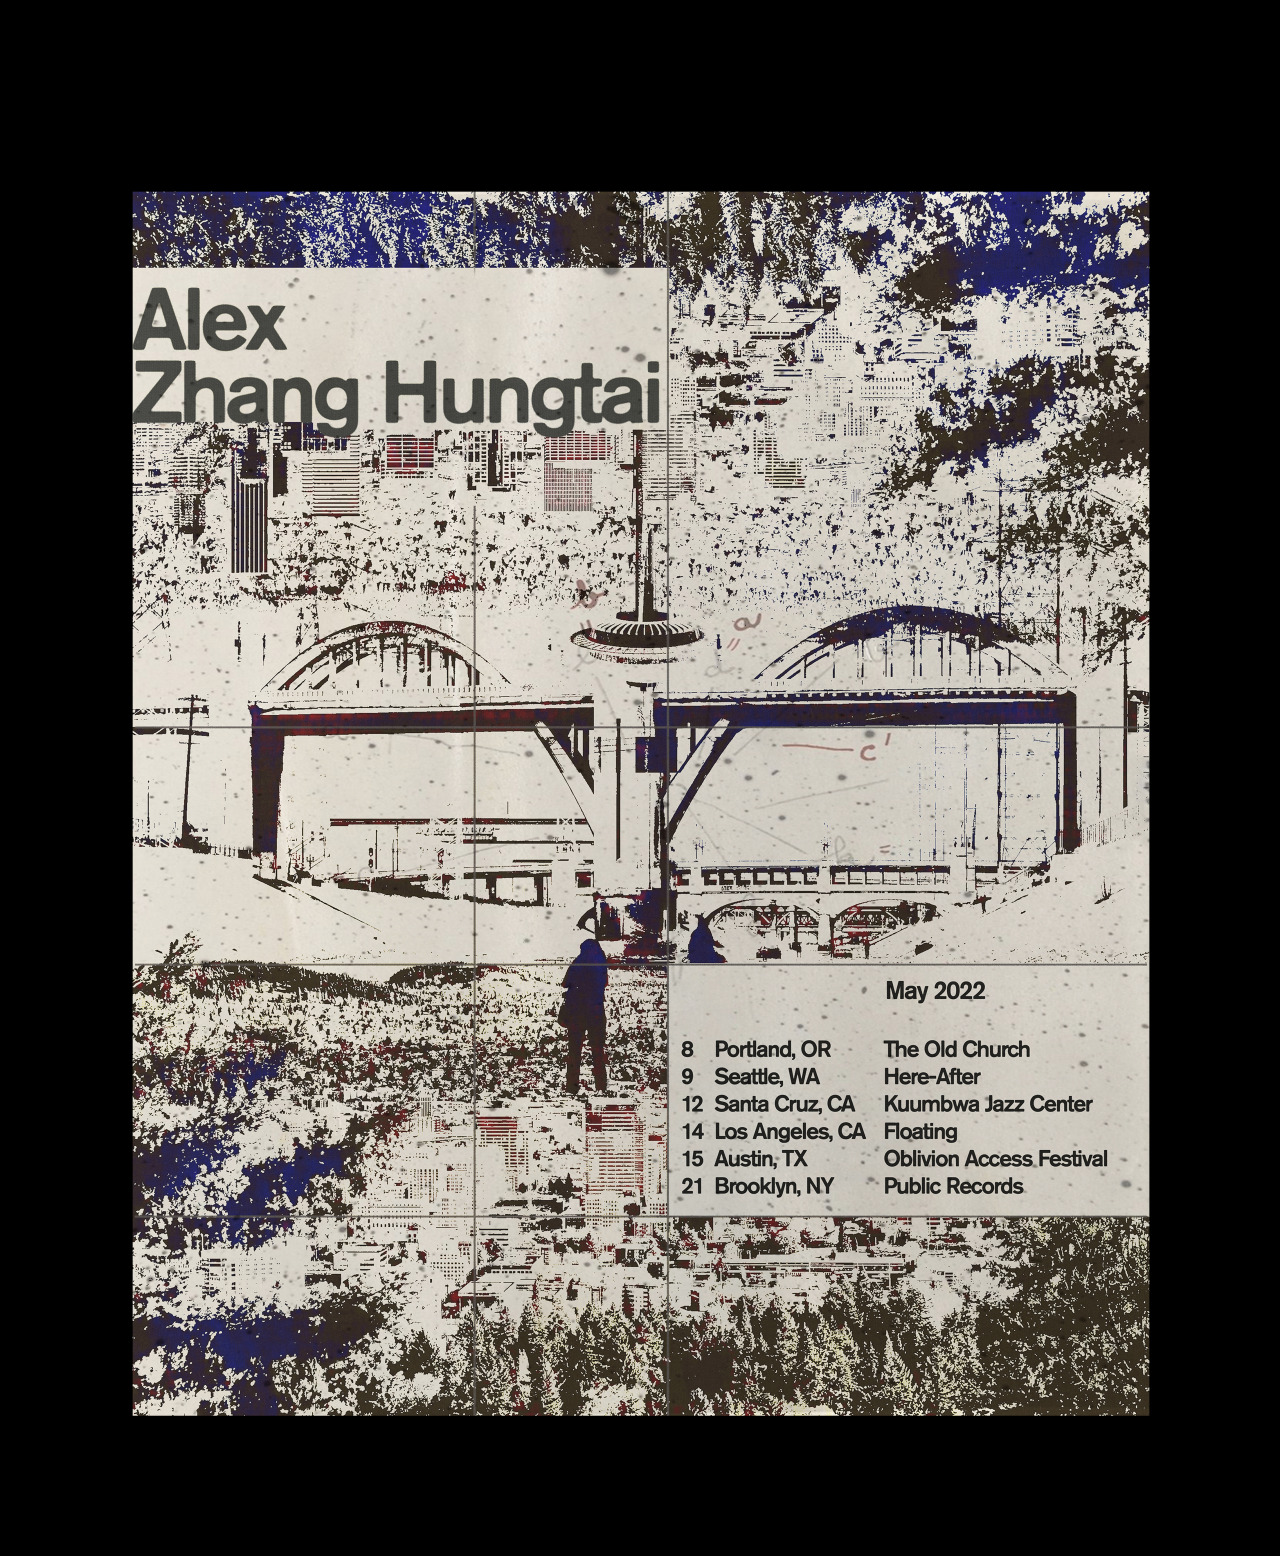 Alex Zhang Hungtai May 2022 Tour